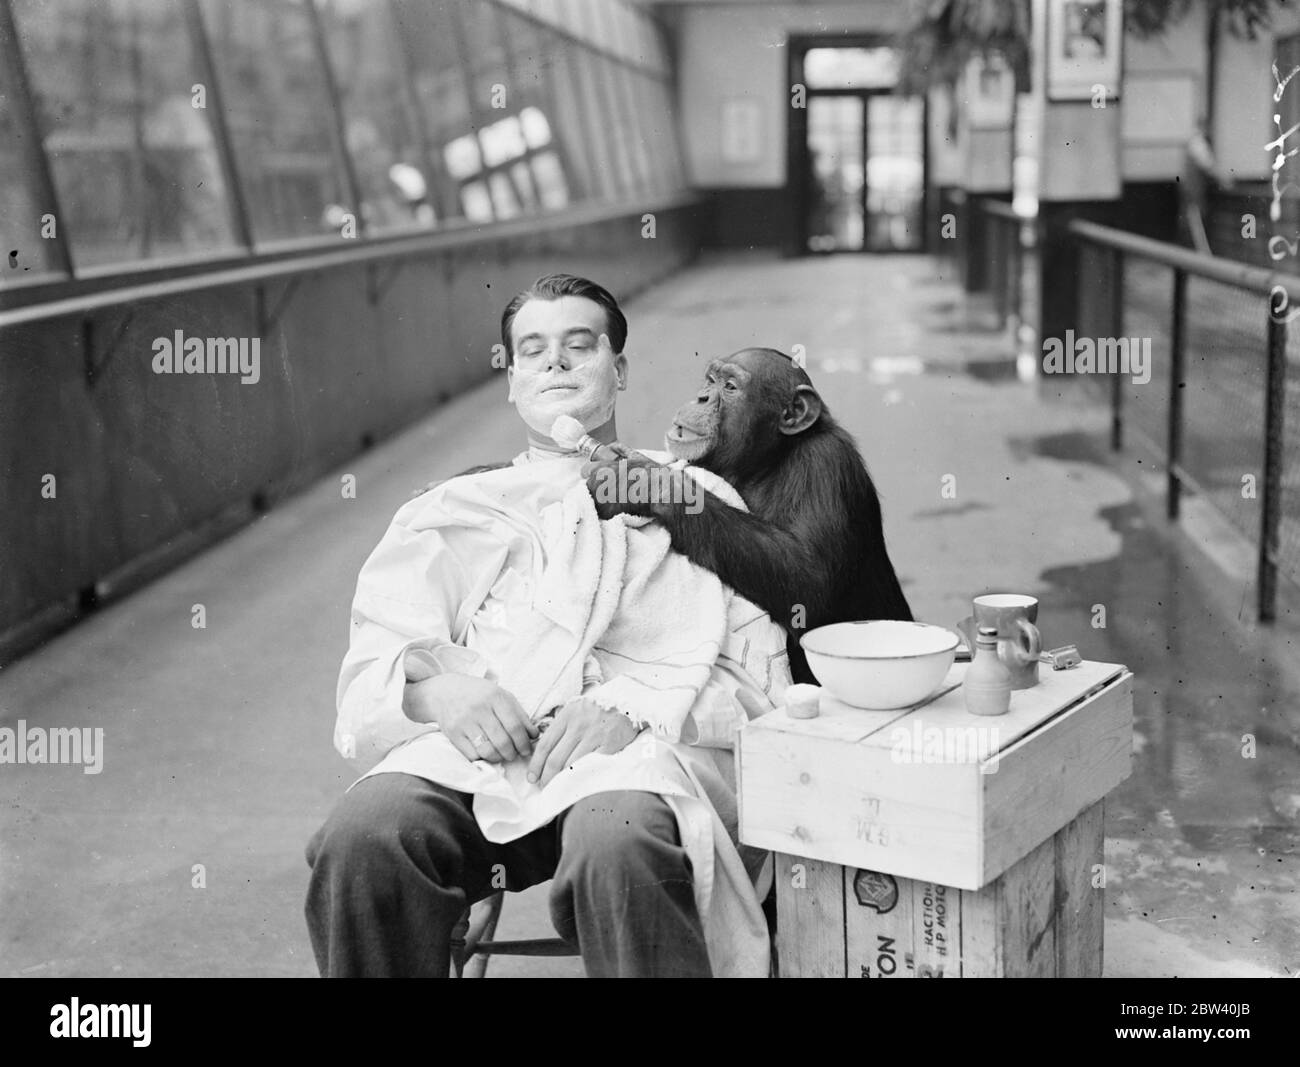 Peter, lo zoo chimp, dà al suo custode una rasatura profonda! Il guardiano Harry Brown si rade ogni giorno nella Monkey House dello Zoo di Londra infornò Peter, l'impressionante scimpanzé, con il desiderio di provare la propria mano come barbiere. Keeper Brown, rasato, polverizzato e spazzolare giù dal chimp intelligente. Foto: Peter lavora la pelle con la spazzola di rasatura. 8 aprile 1937 Foto Stock